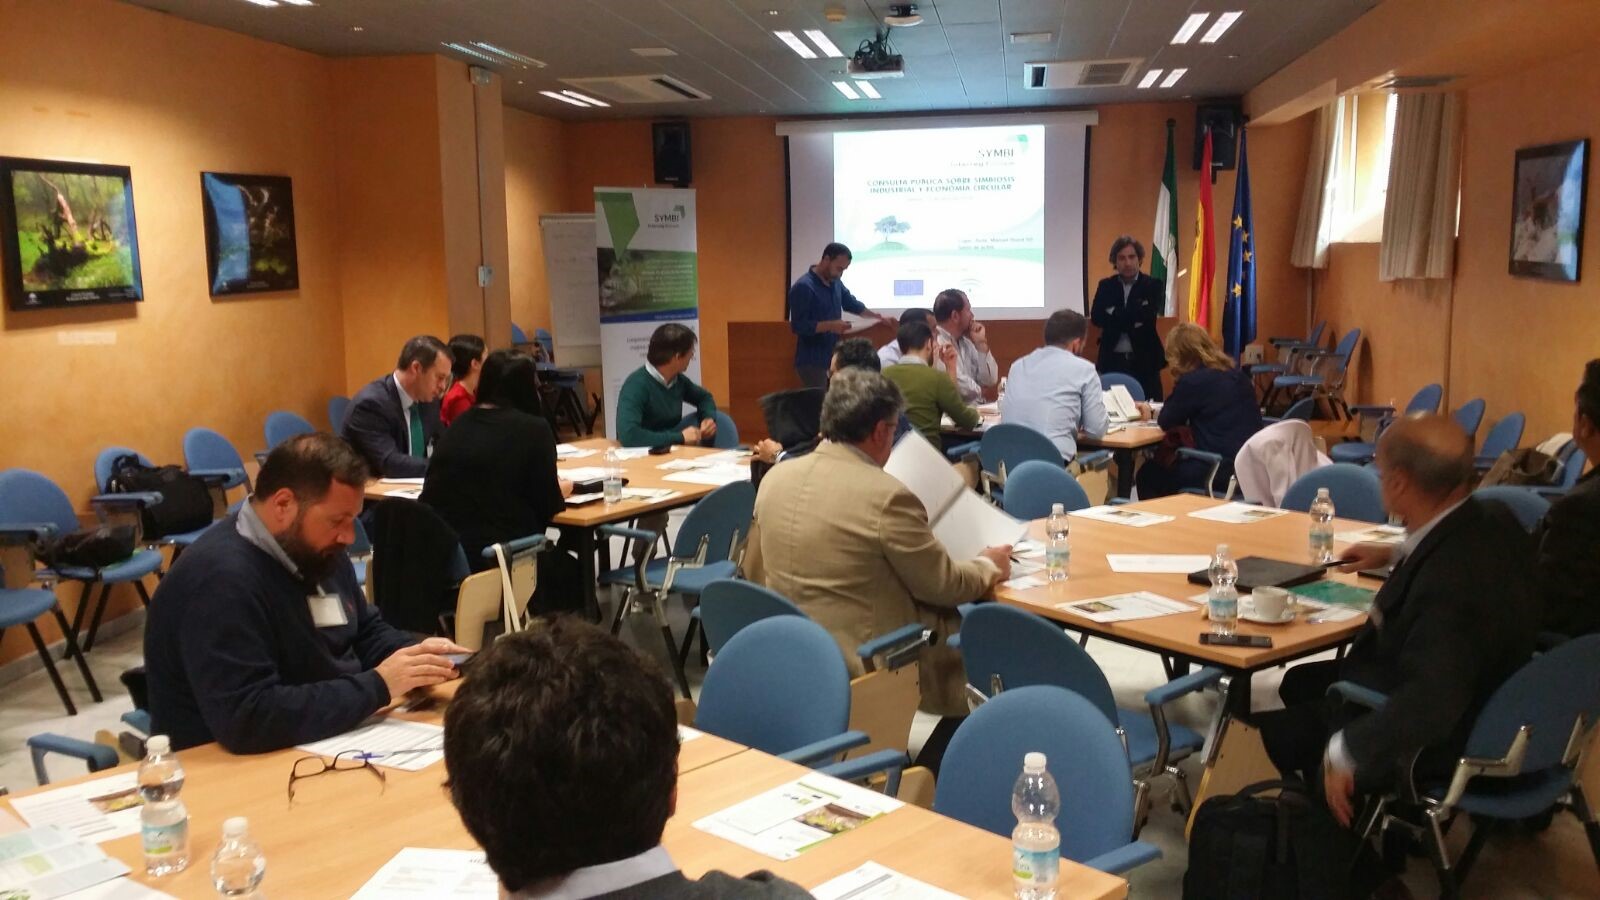 Public Consultation Meeting in Andalucia